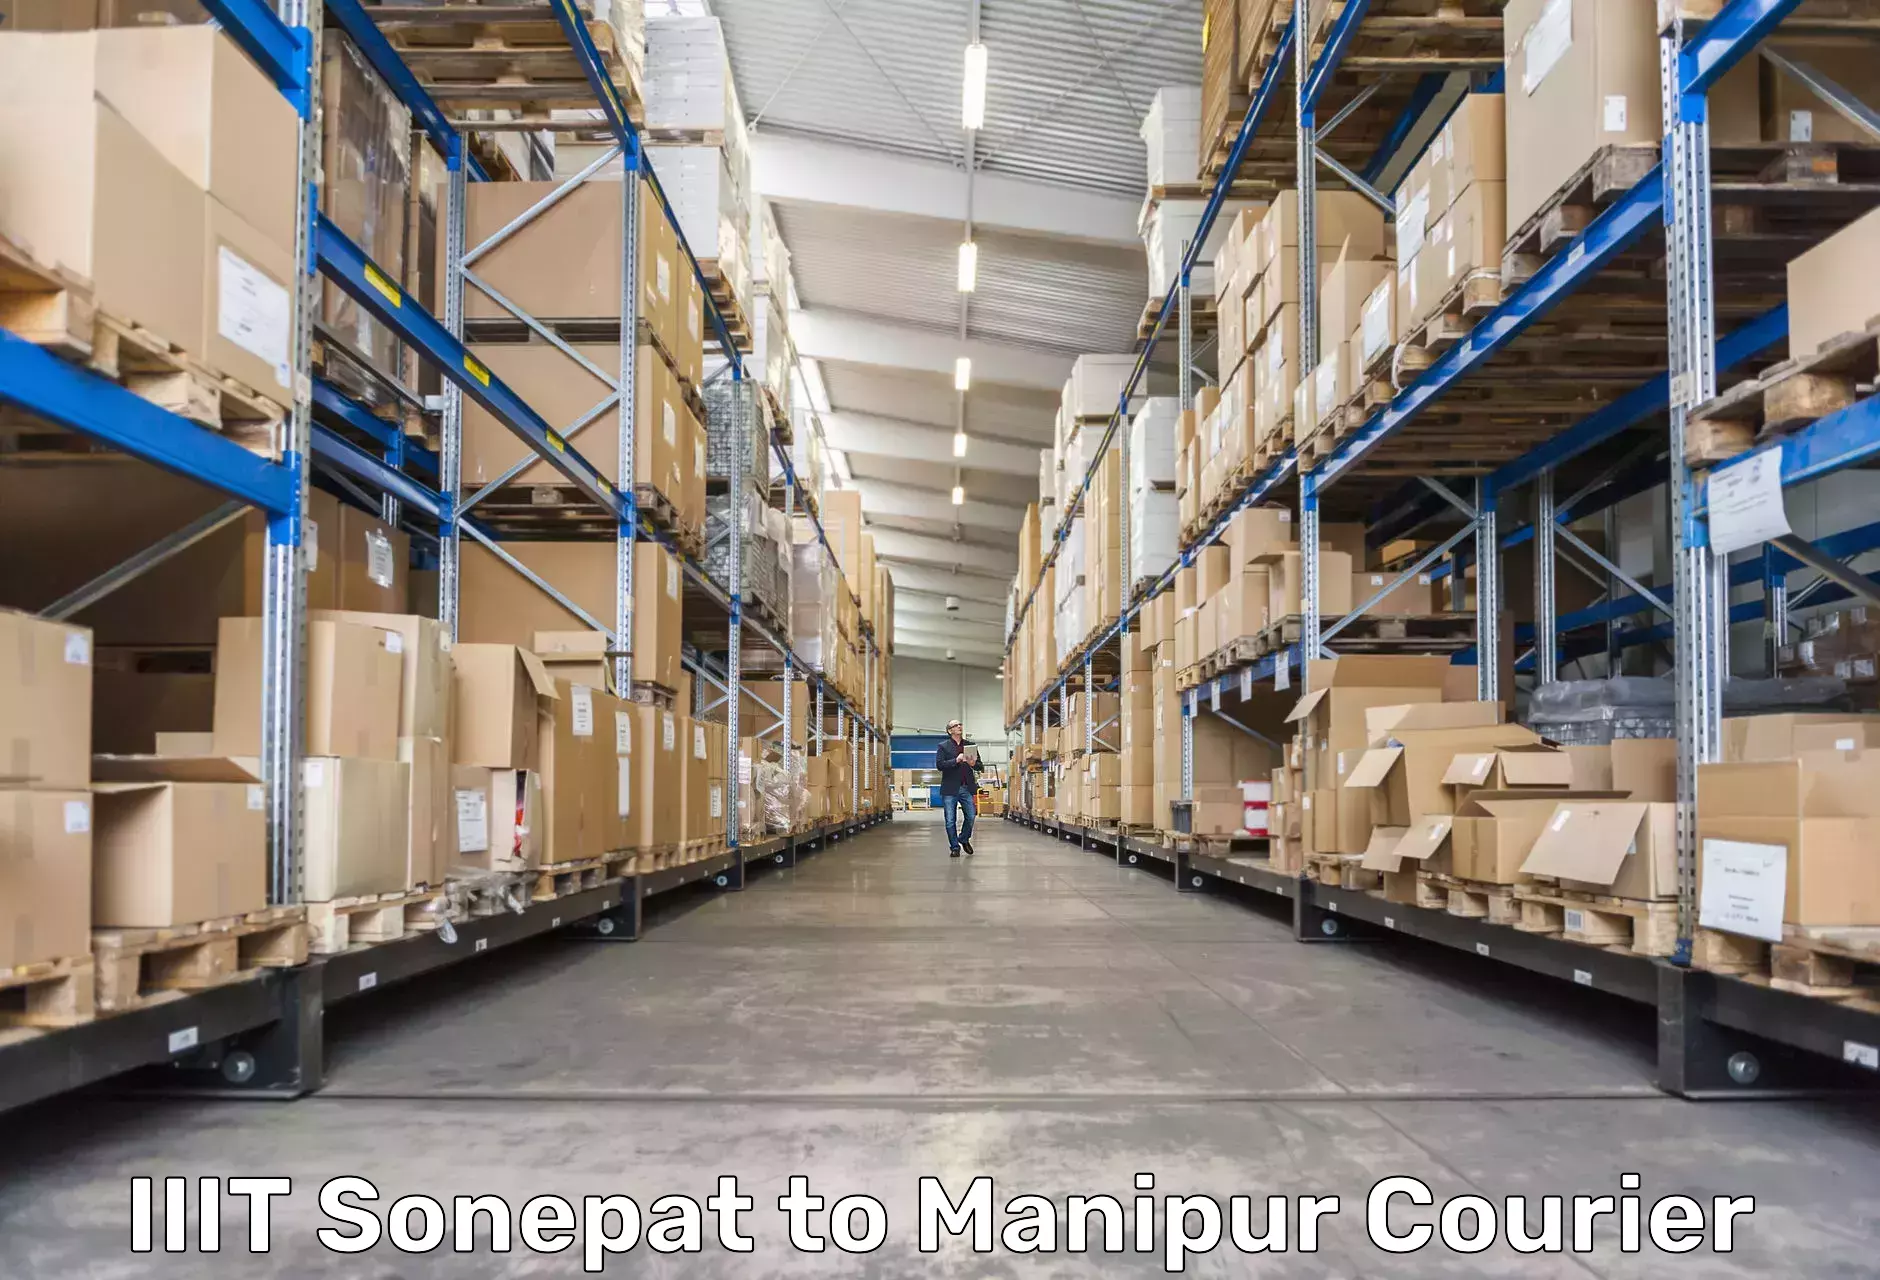 Online package tracking IIIT Sonepat to Manipur